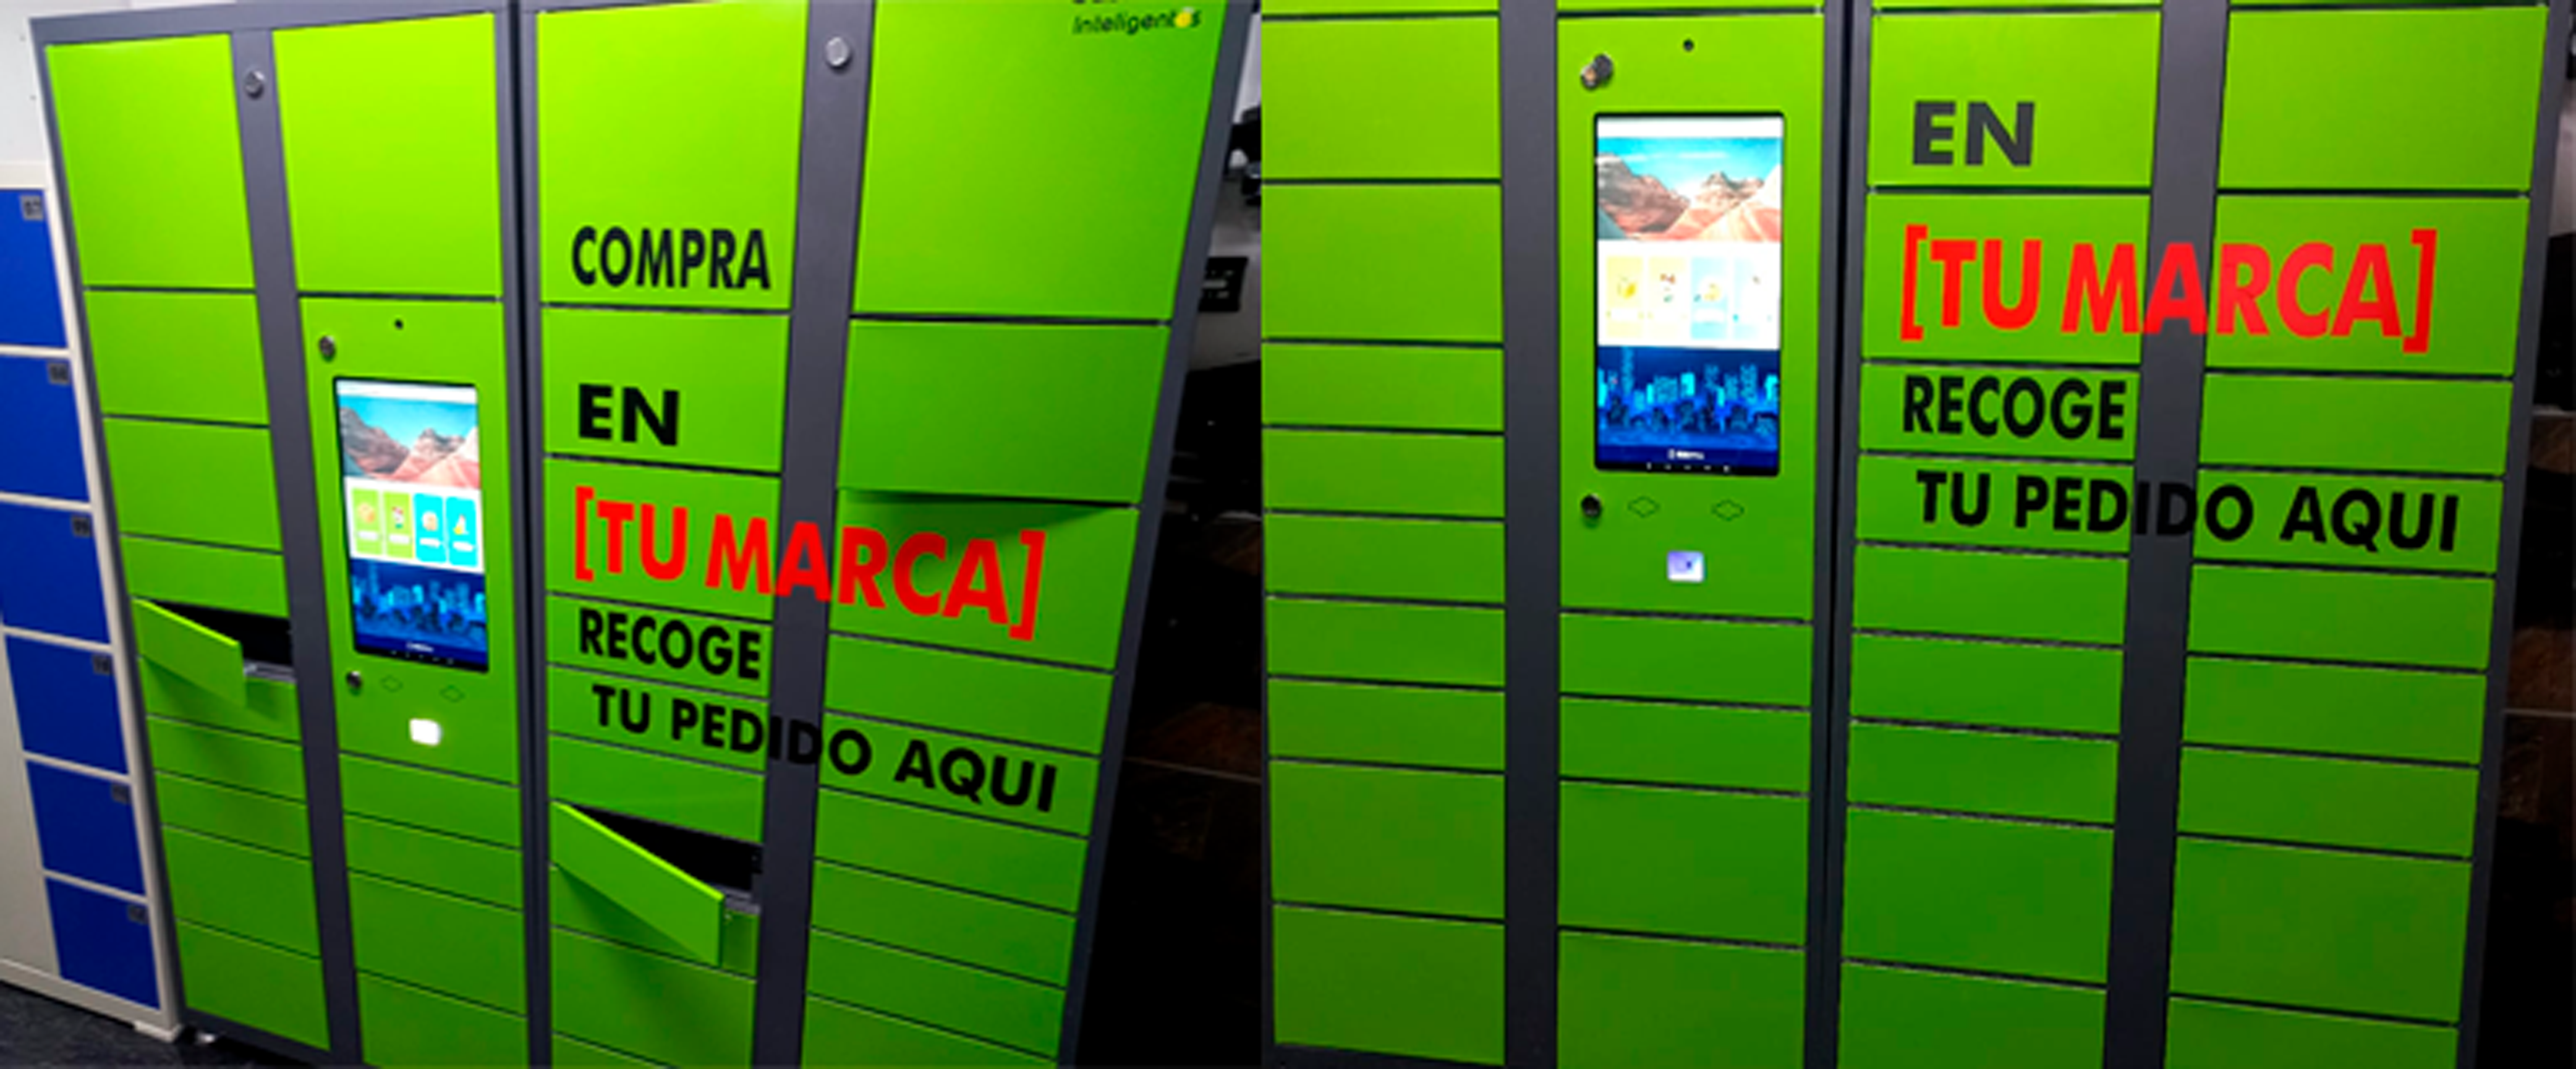 smart lockers personalizados para entregas